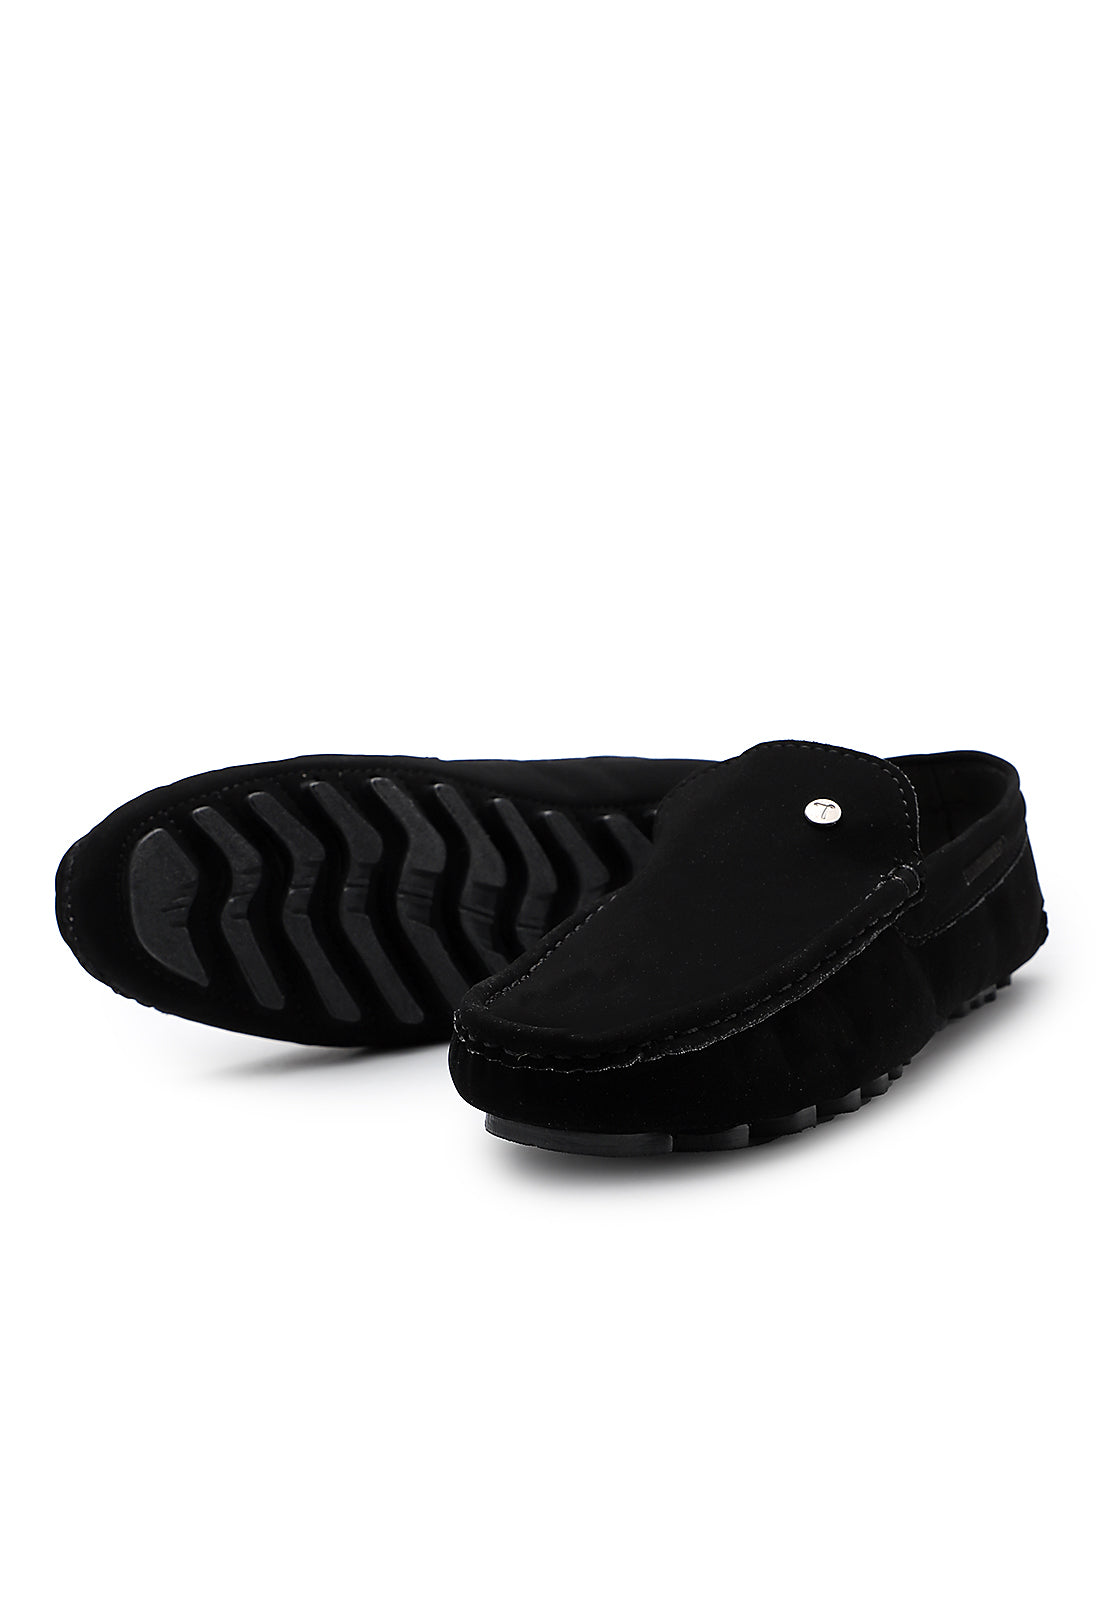 zapato hombre tubular Negro Tellenzi 026